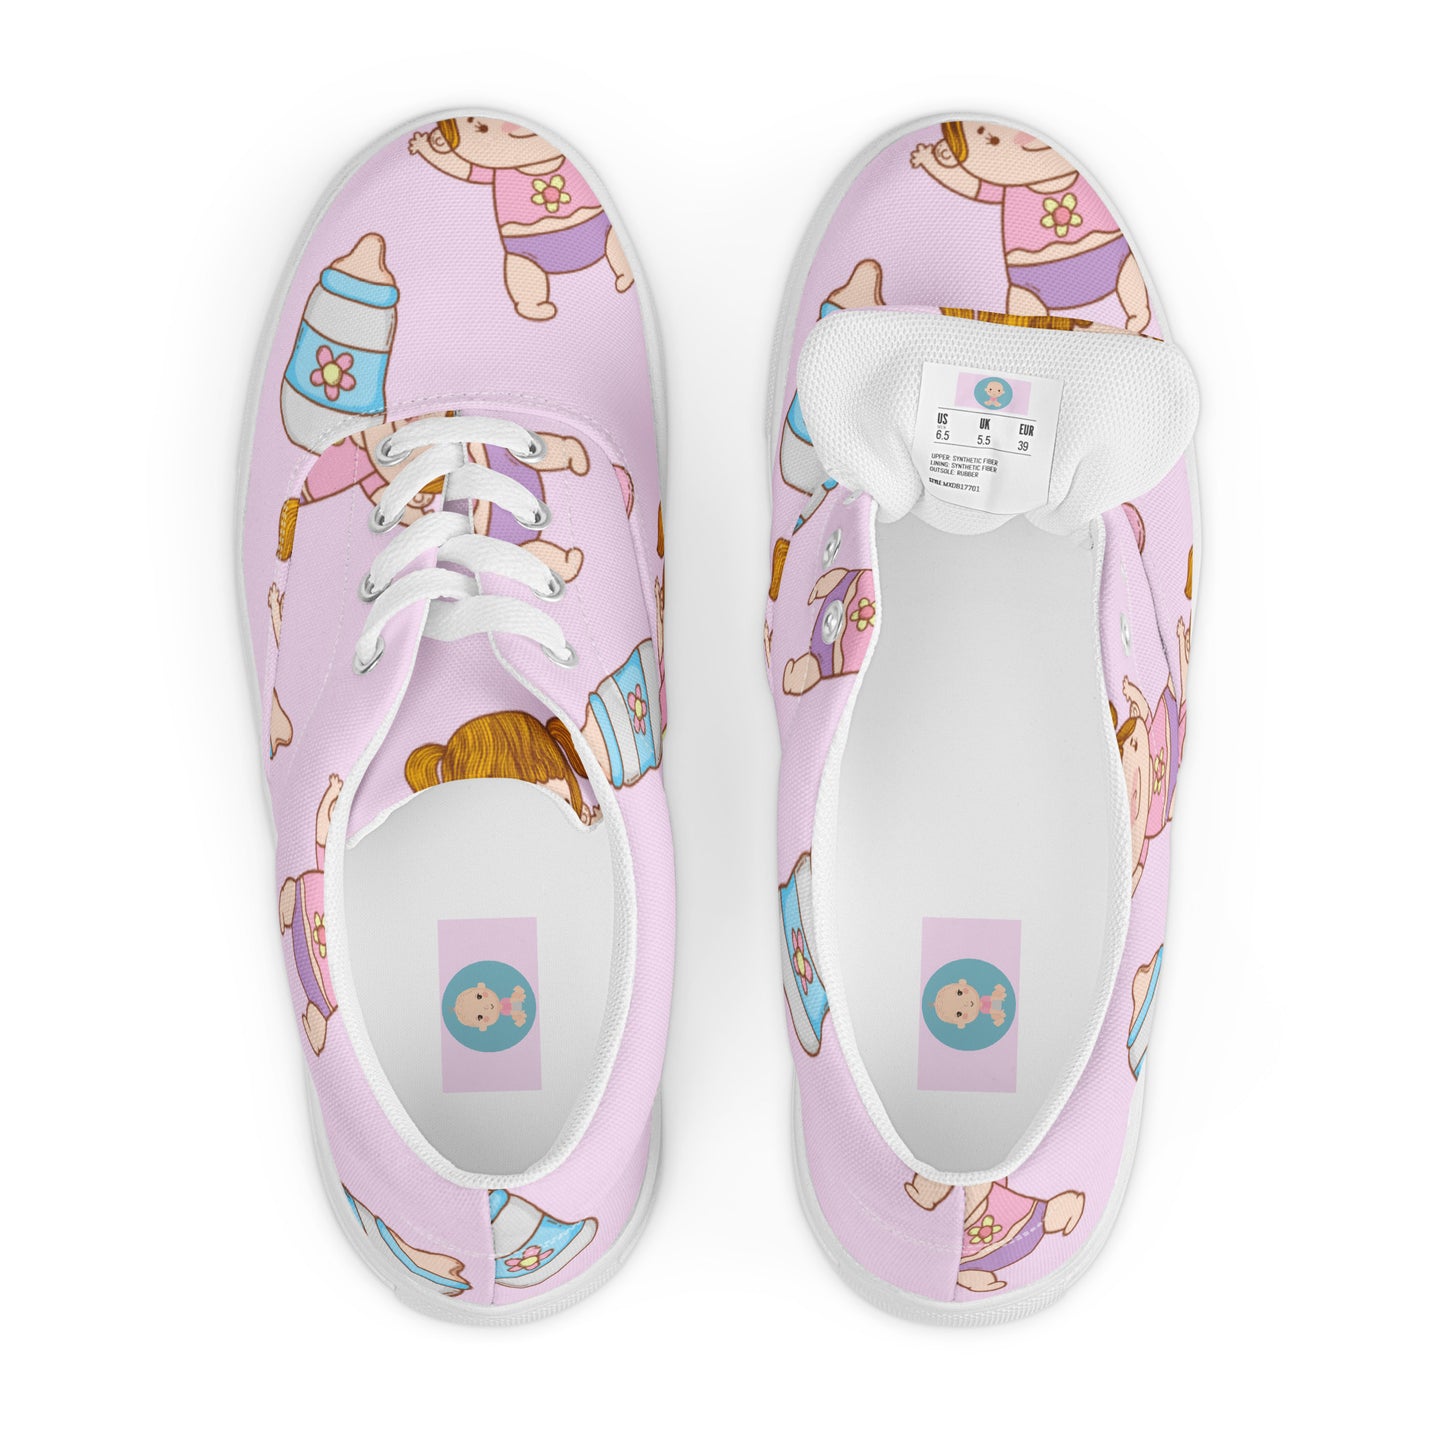 ABDL Cute Baby Men's Lace-up Canvas Shoes